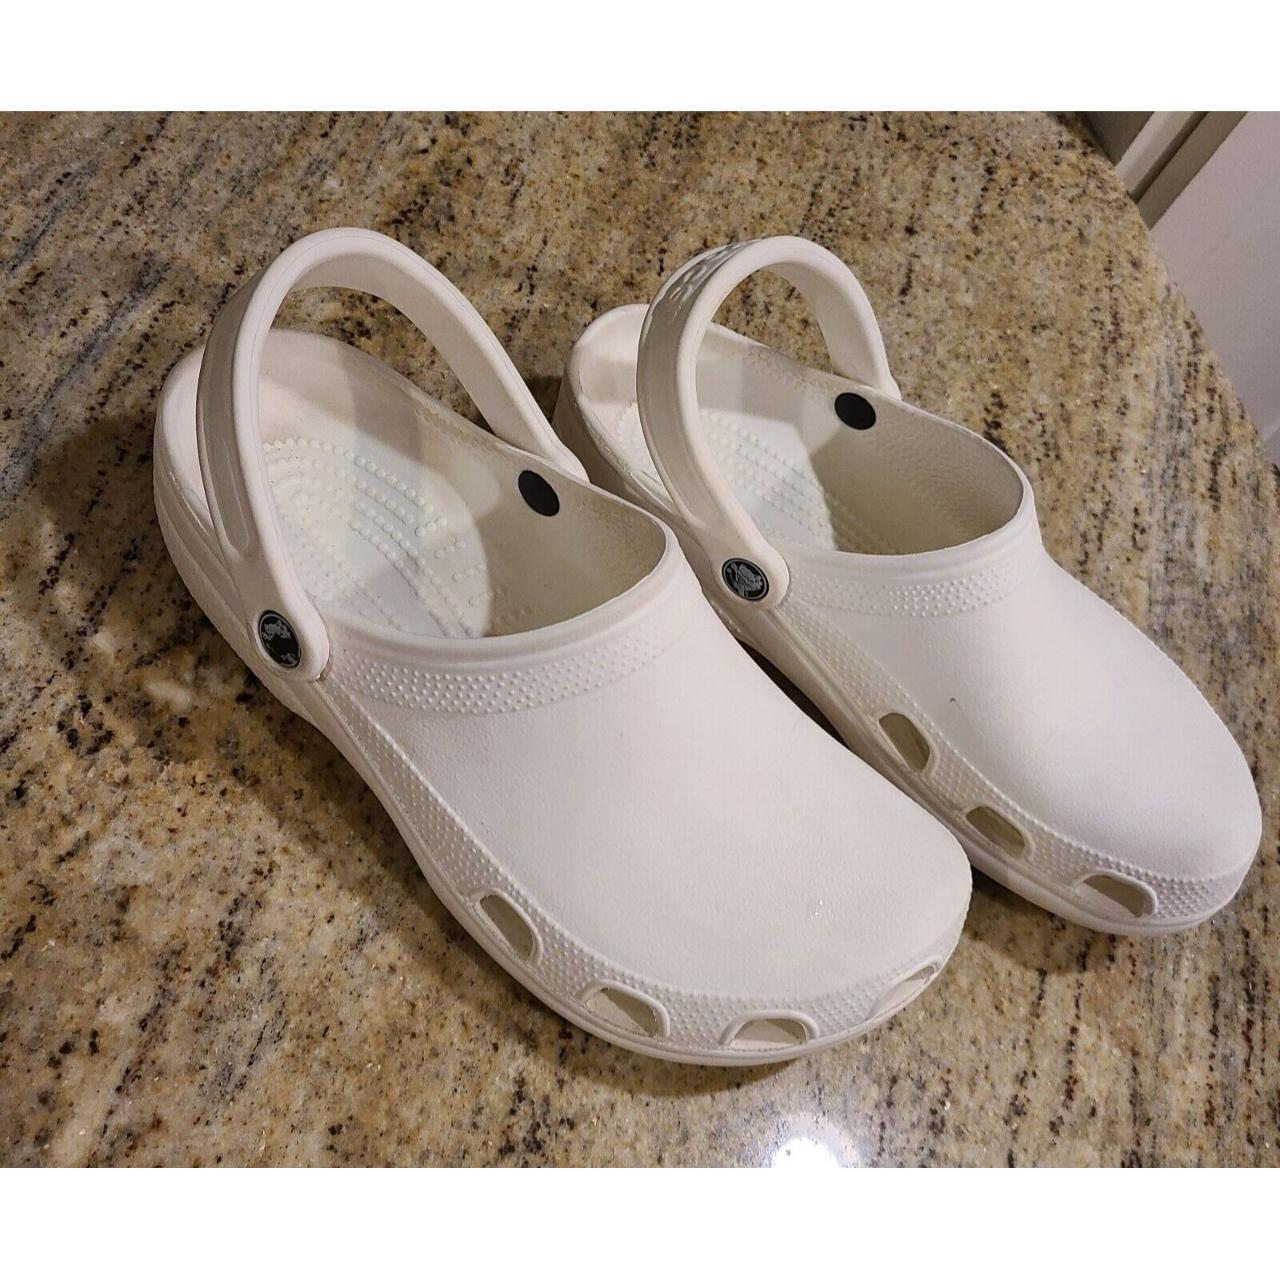 Crocs Classic White Clogs - Men's Size 8 / Women's... - Depop